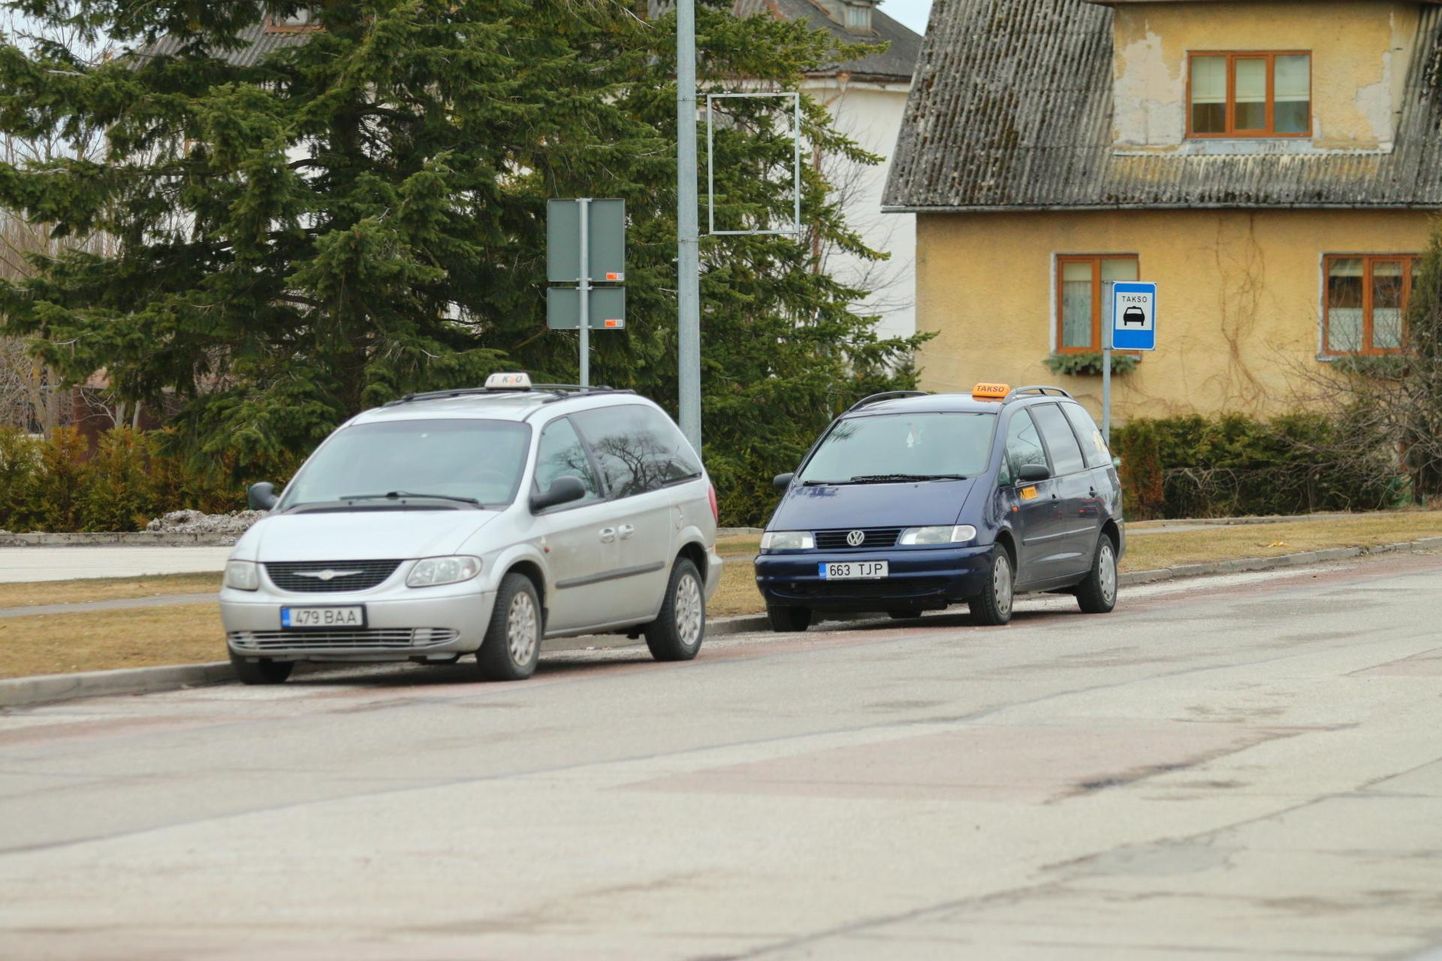 Kagu-Eestis on tekkinud esimesed Taxify äpiga liitunud taksojuhid. Mobiilirakendus hakkab aga edaspidi kandma nime Bolt. Pilt on illustratiivne.